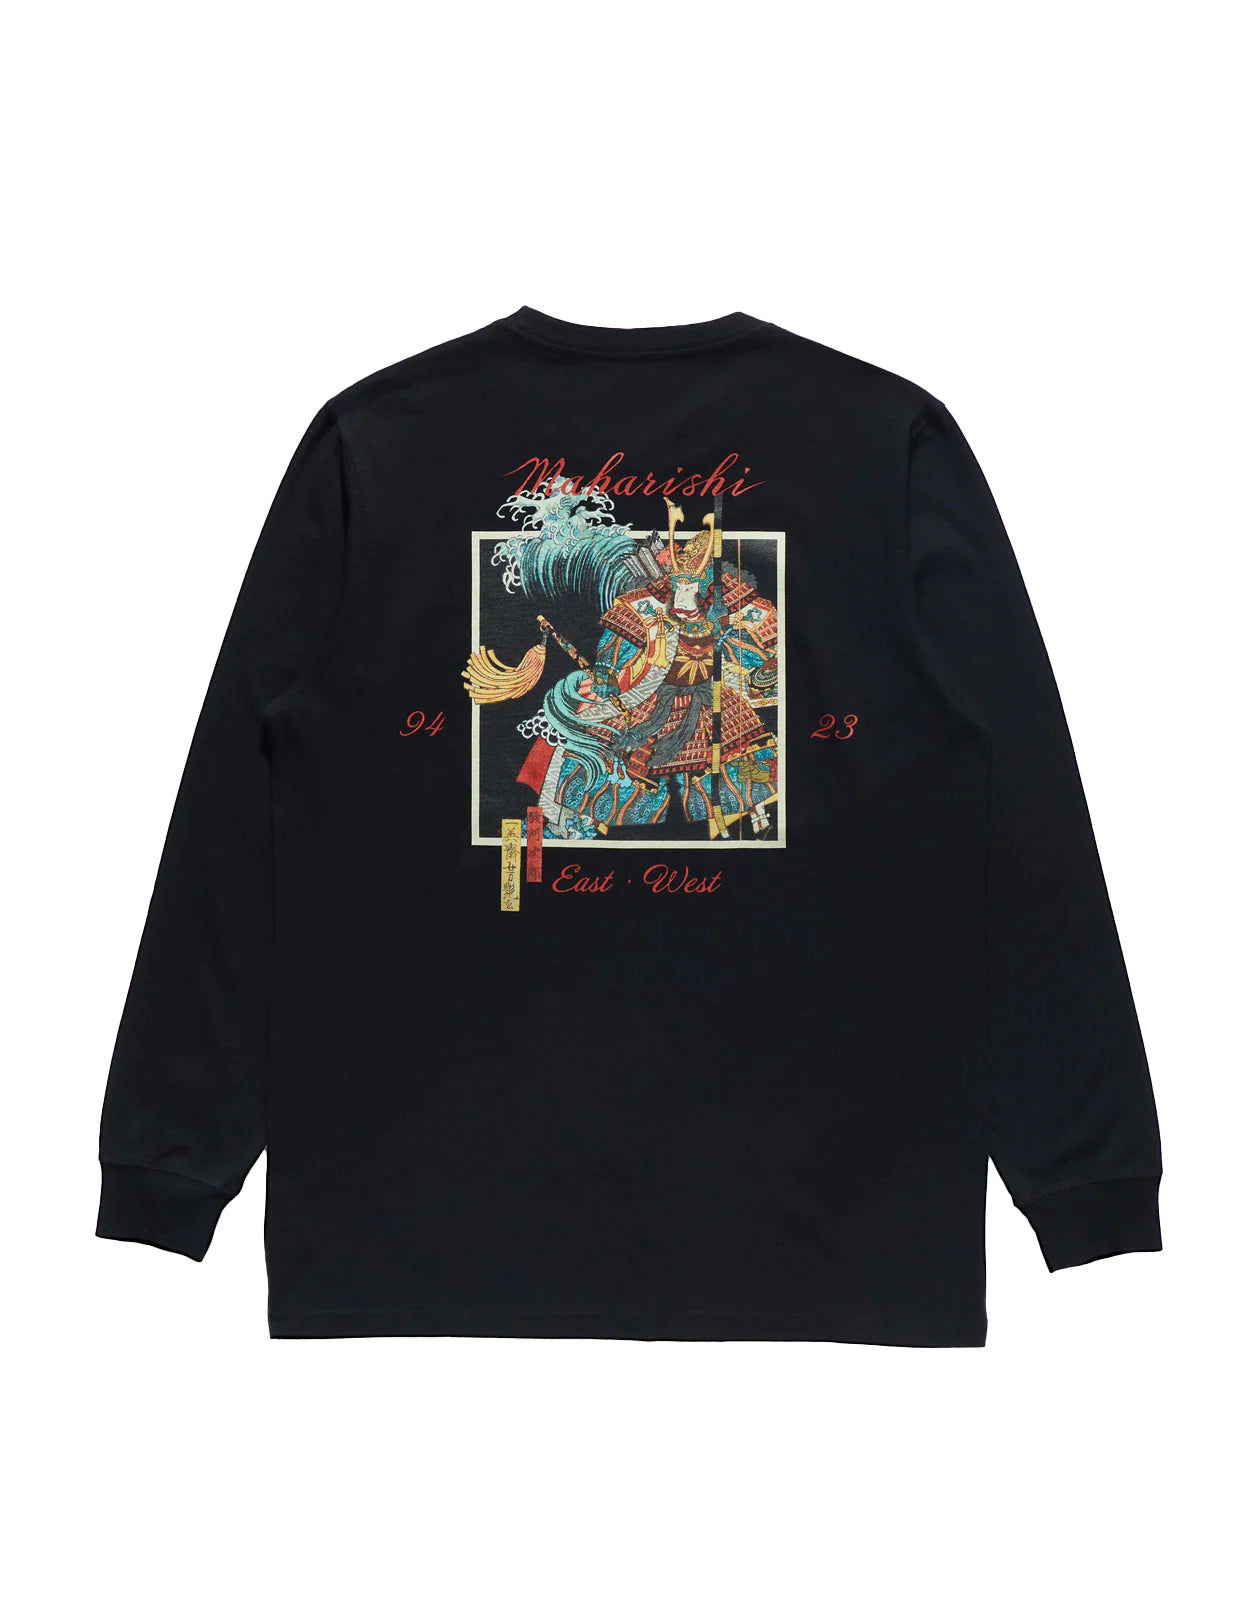 Maharishi Samurai vs Dragon L/S T-Shirt Black